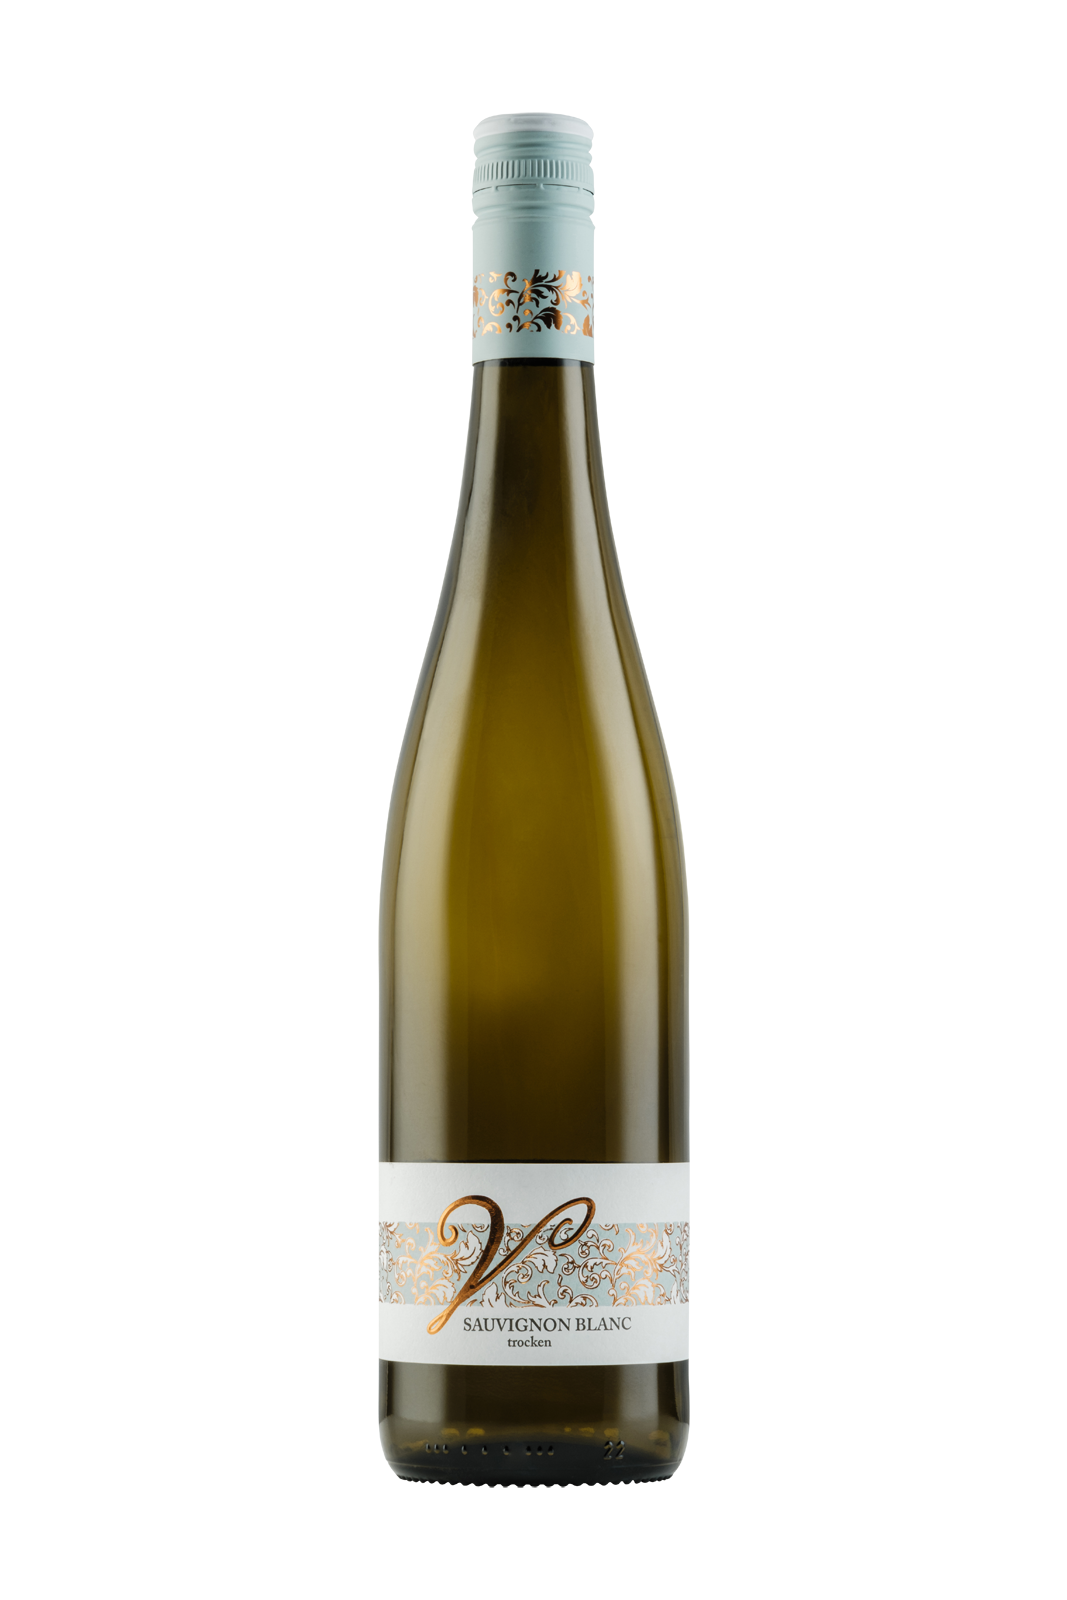 2023 Sauvignon blanc trocken 0,75 L - Vera Keller Weine